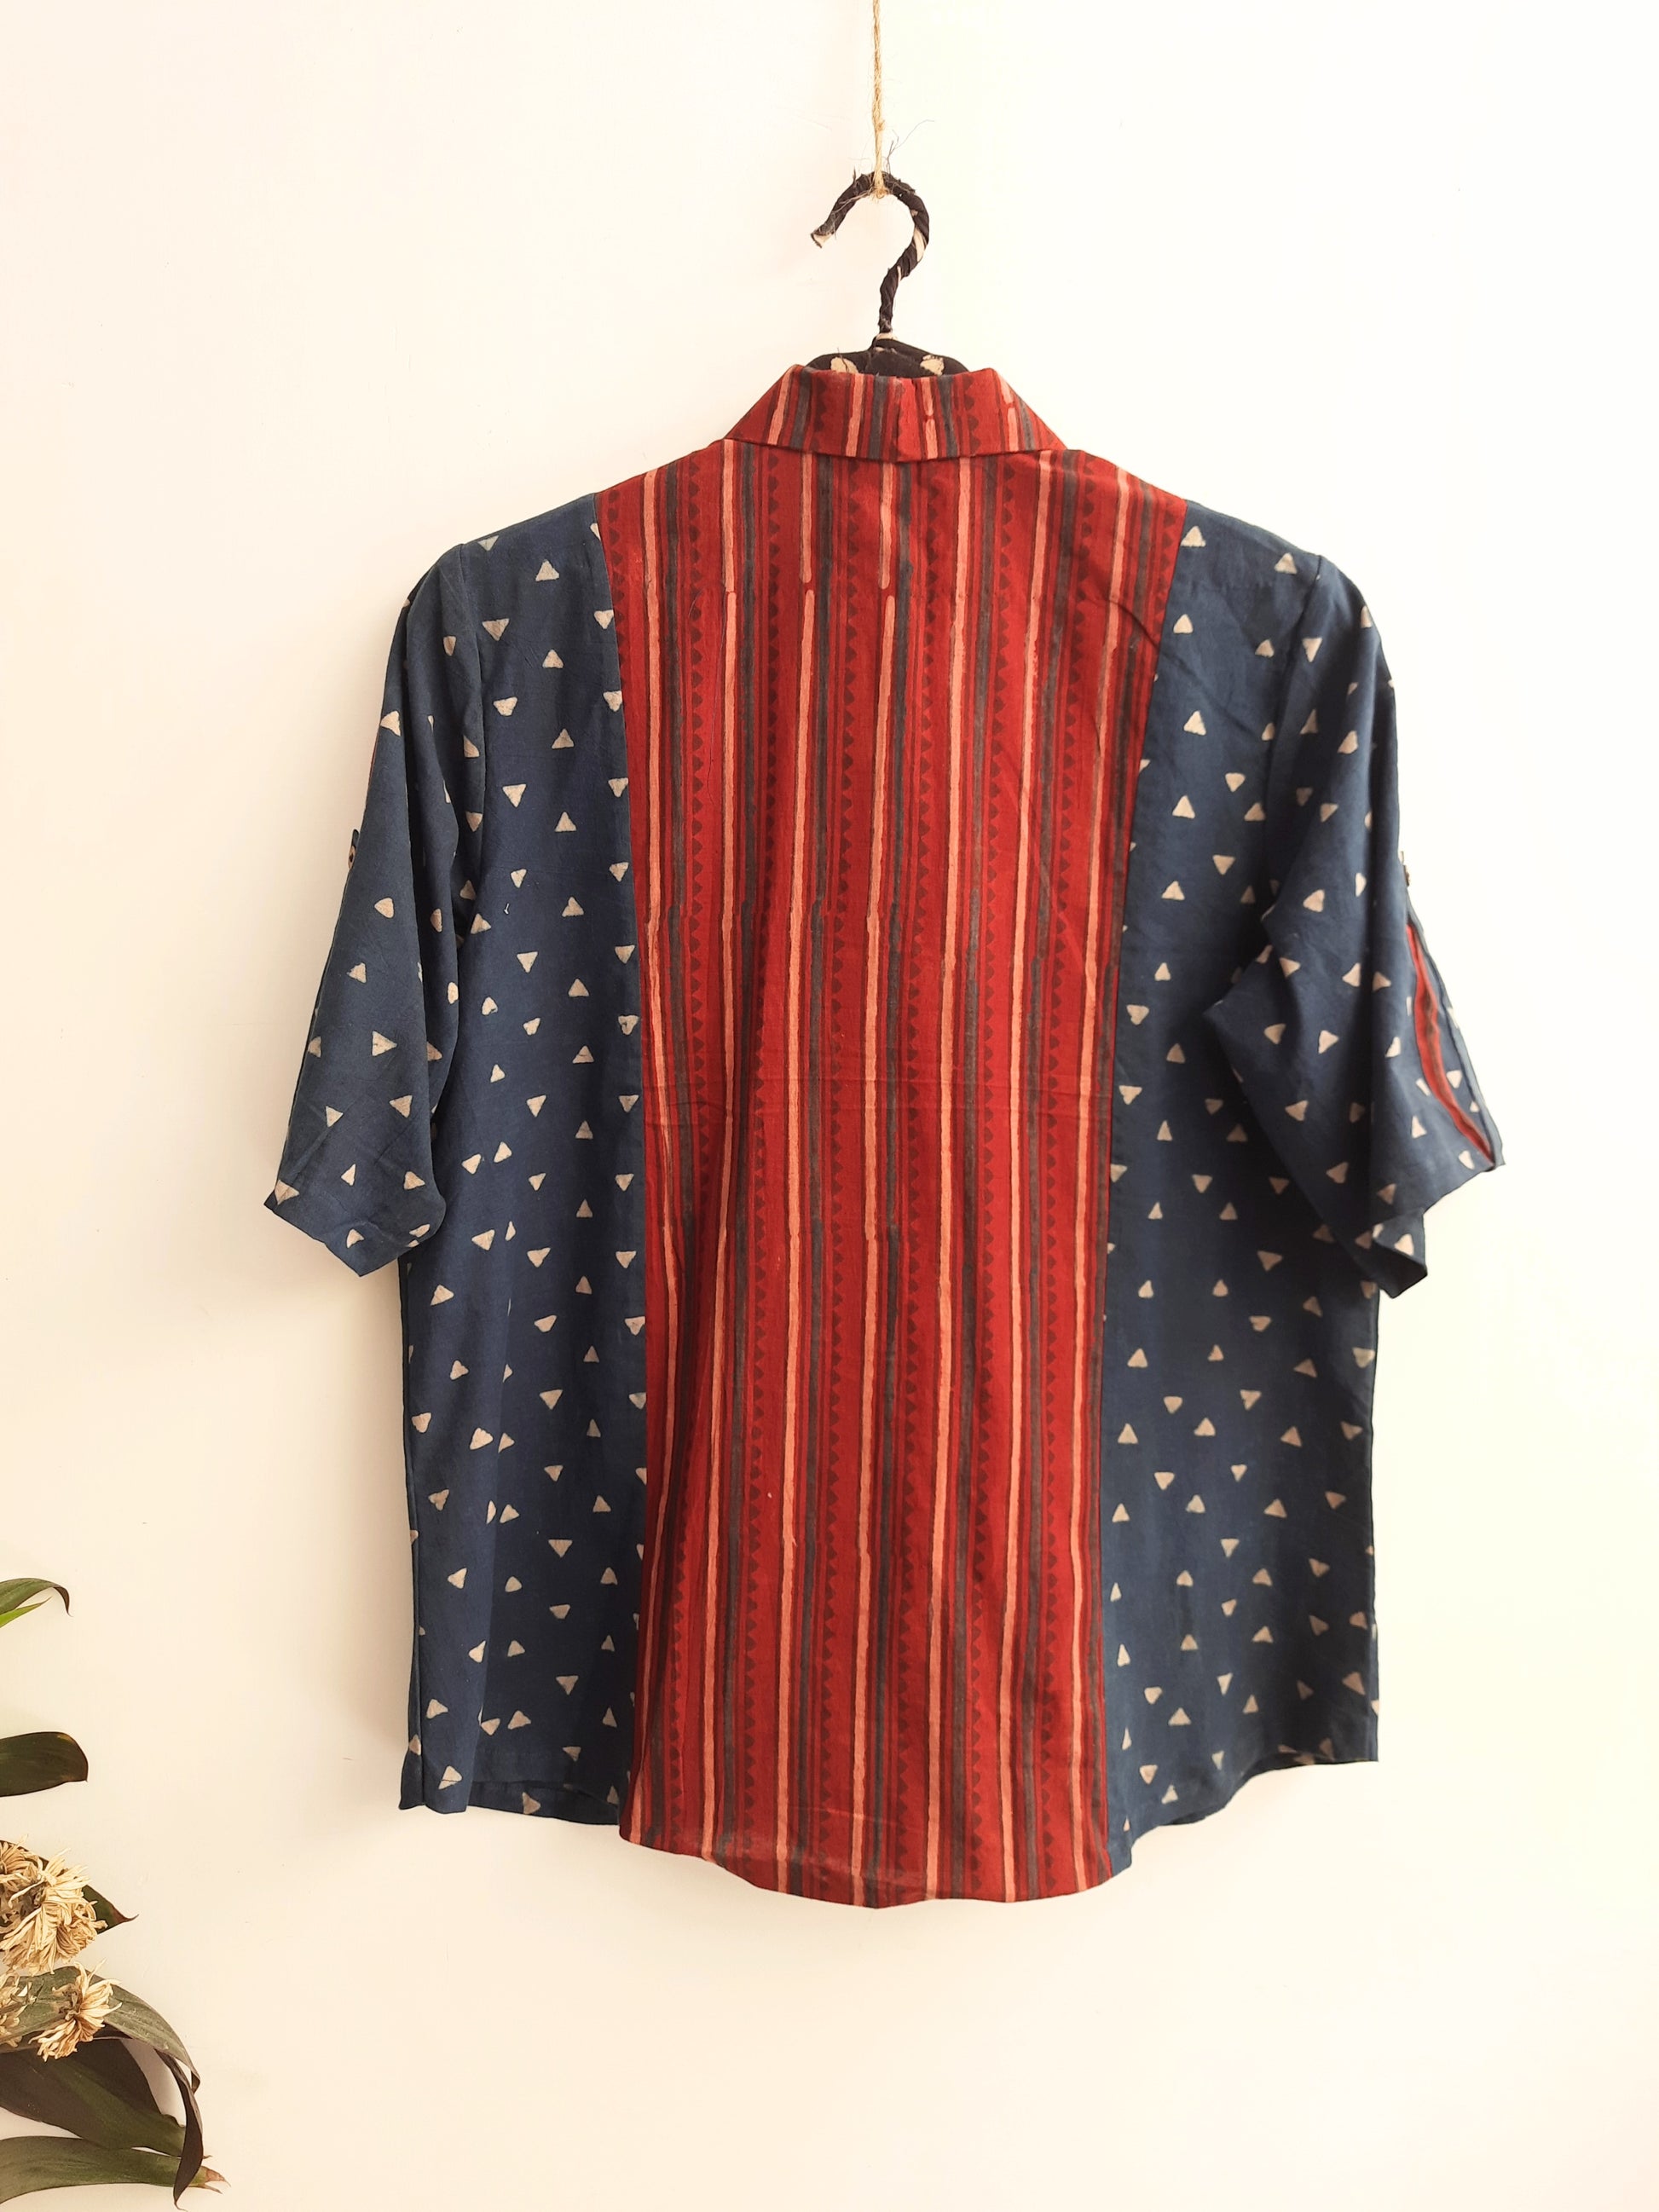 Indigo ajrakh patchwork shirt, Ajrakh natural dyed shirt, Sustainable fashion